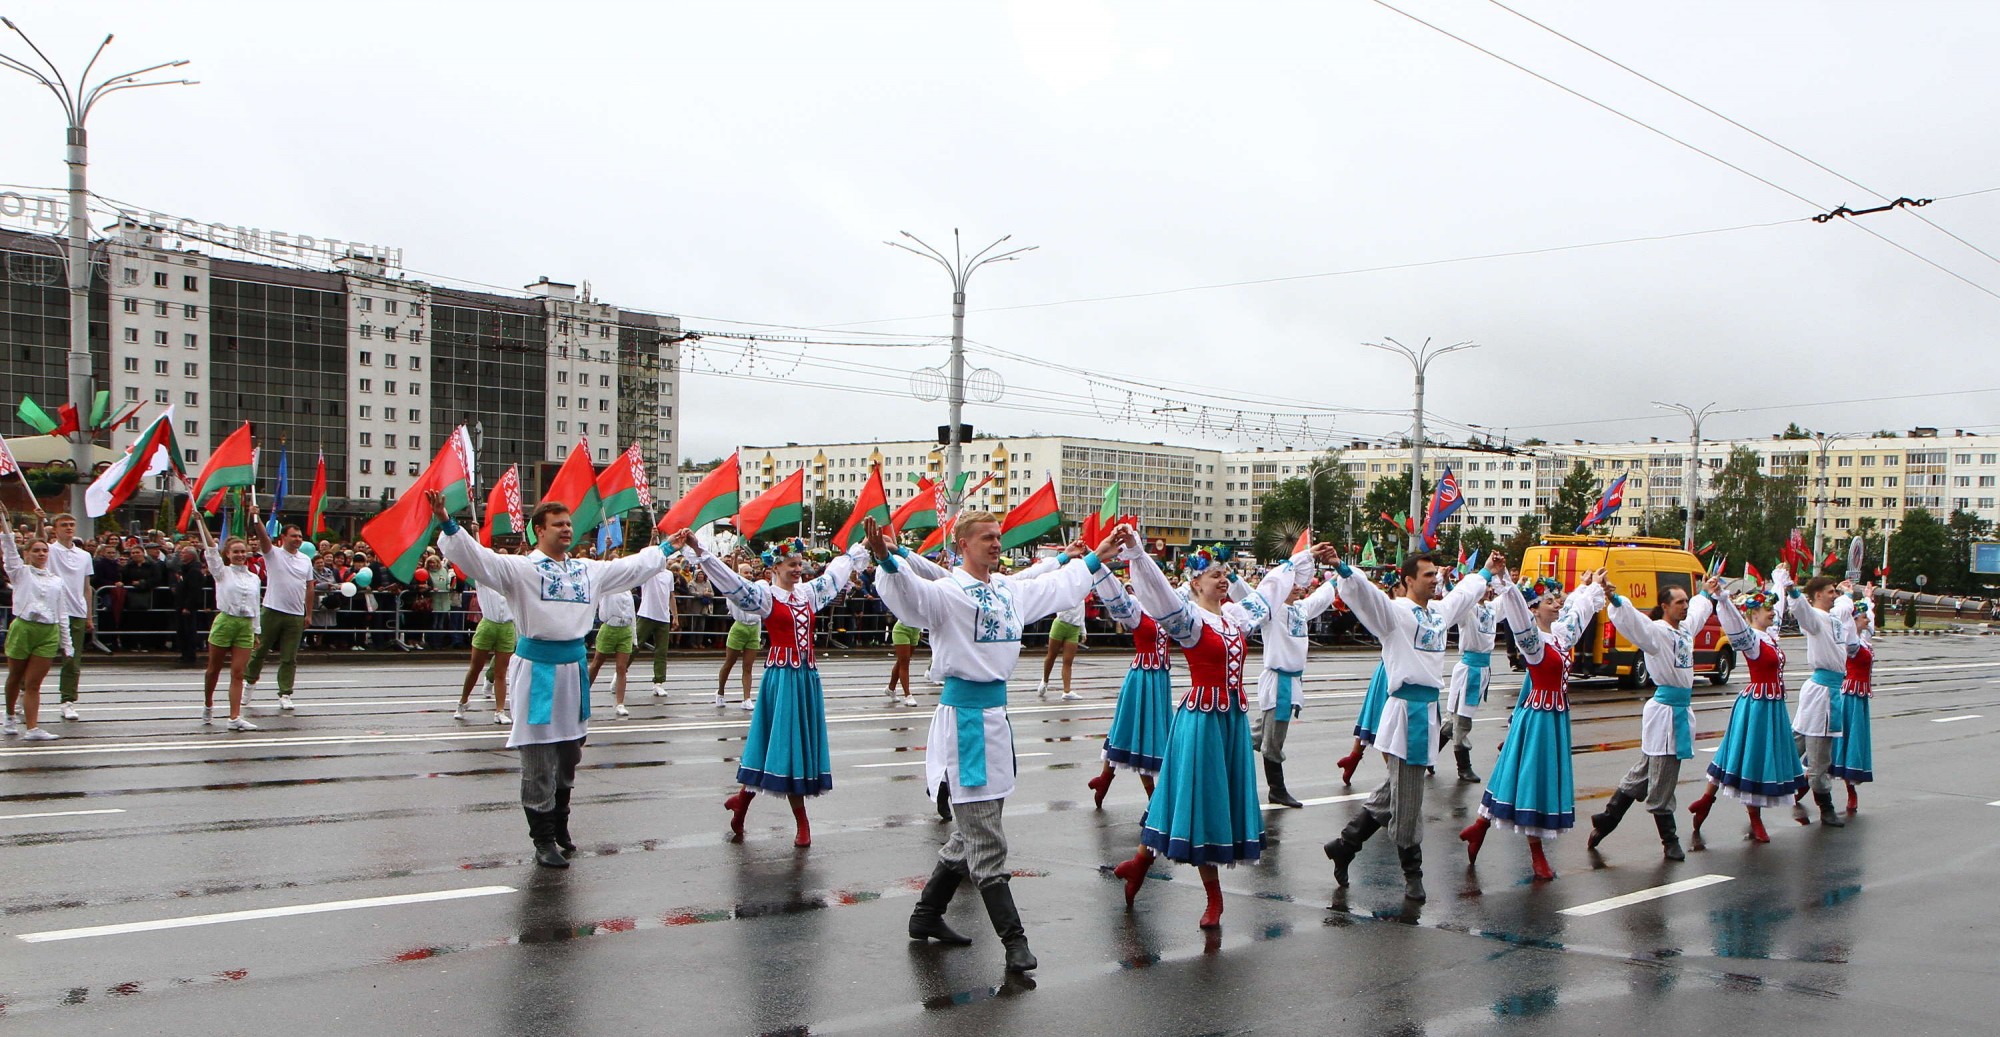 Колонна УП "Витебскоблгаз" на торжественном шествии, посвящённом Дню Независимости Республики Беларусь